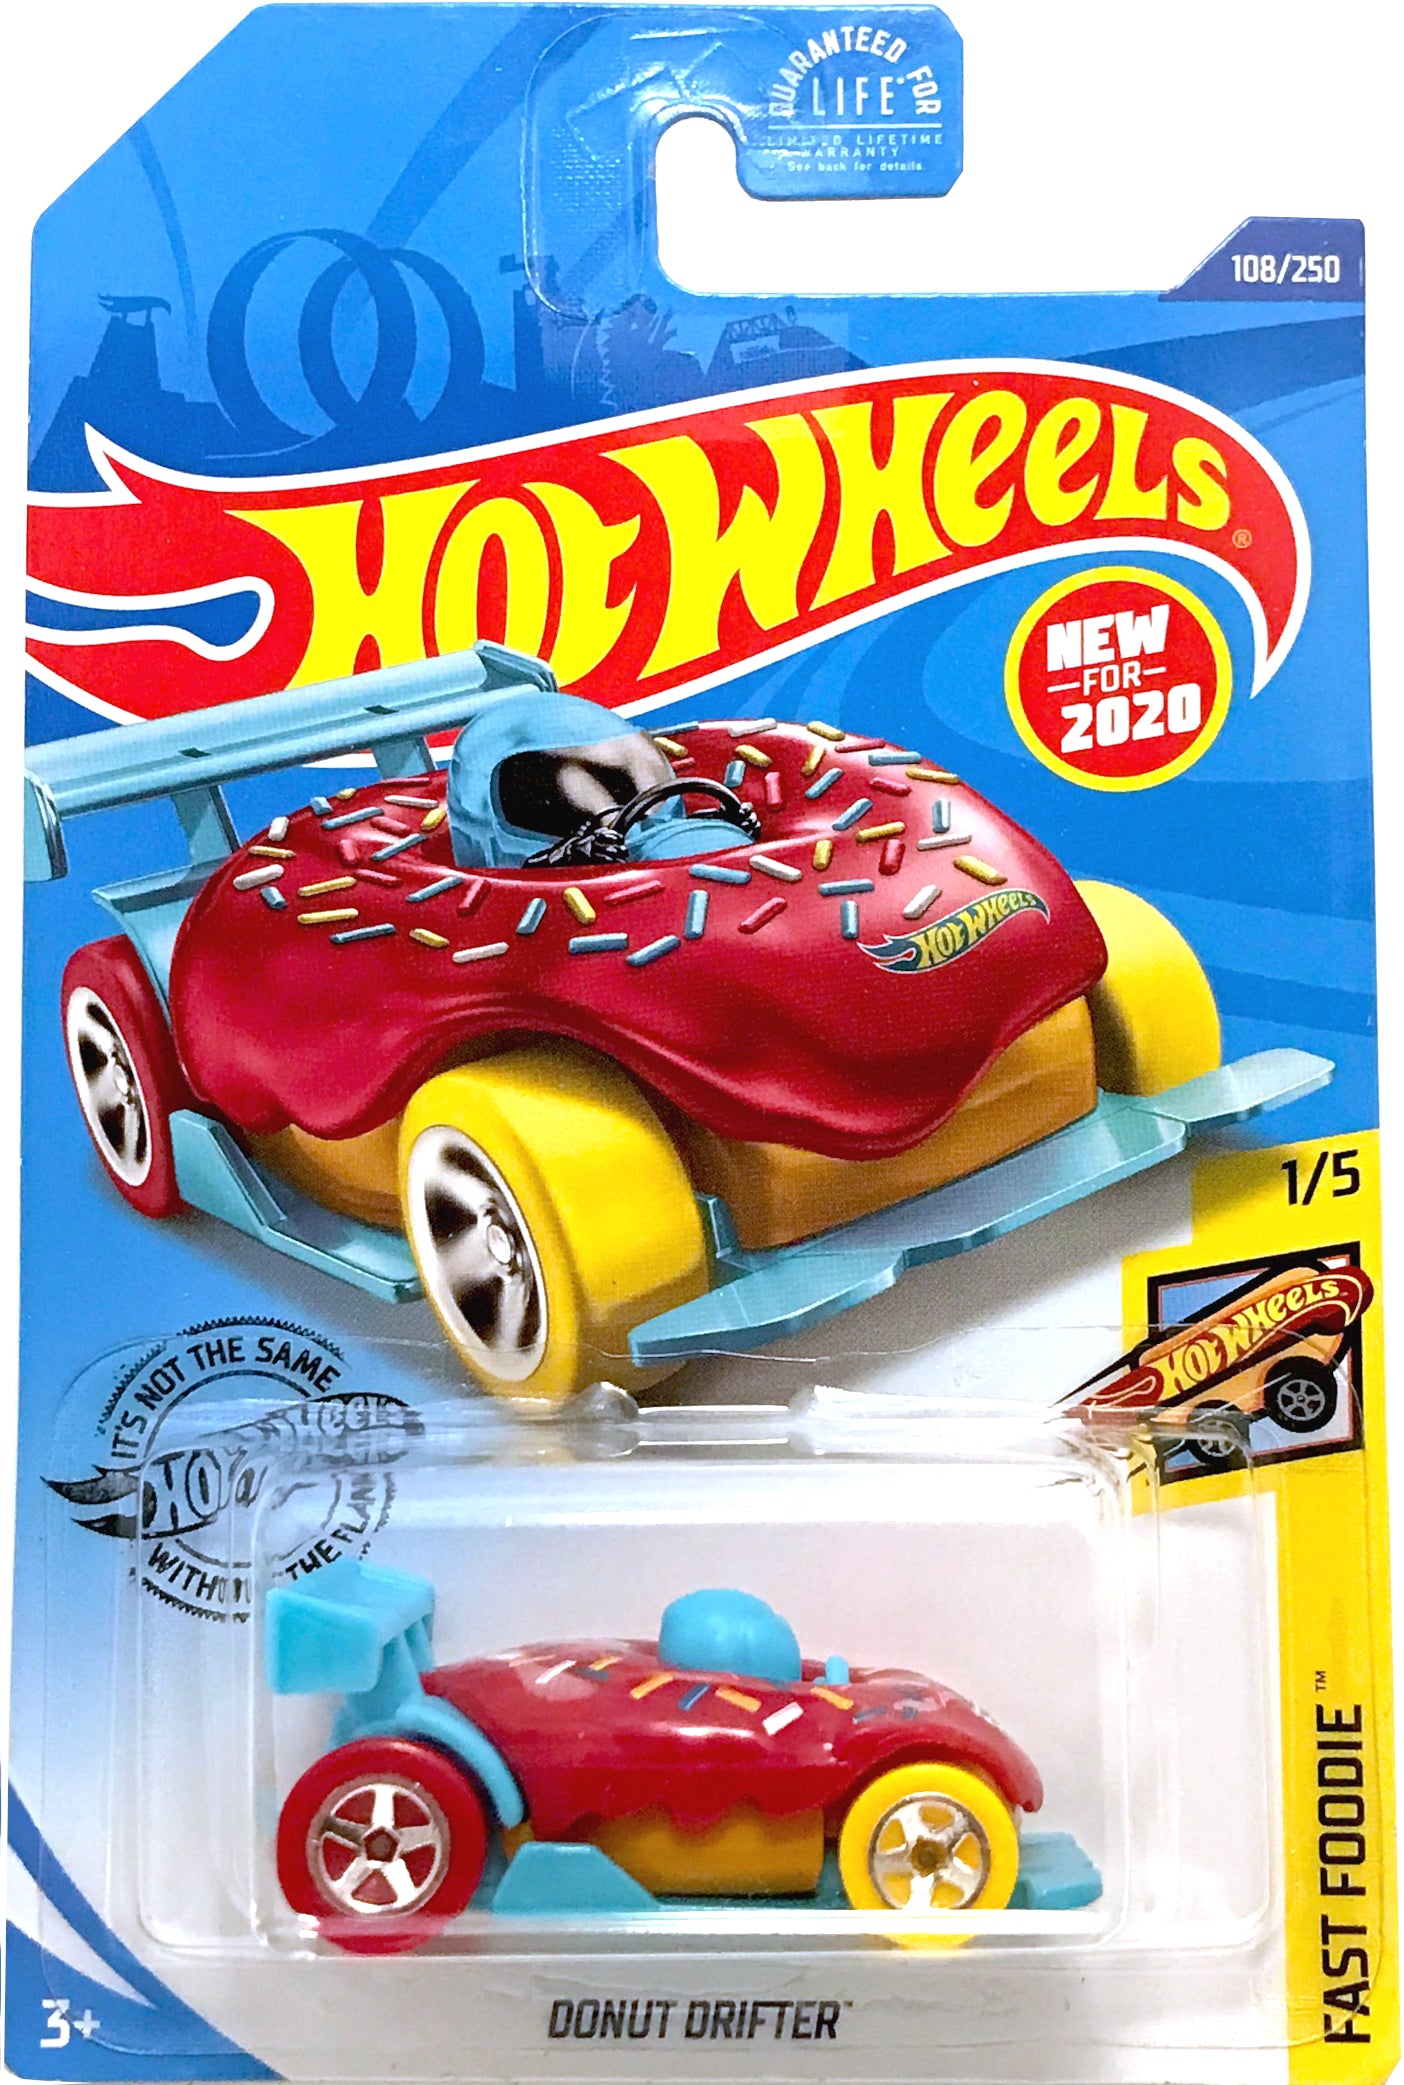 2020 Hot Wheels Mainline #108 - Donut Drifter (Red / Blue) GHD98